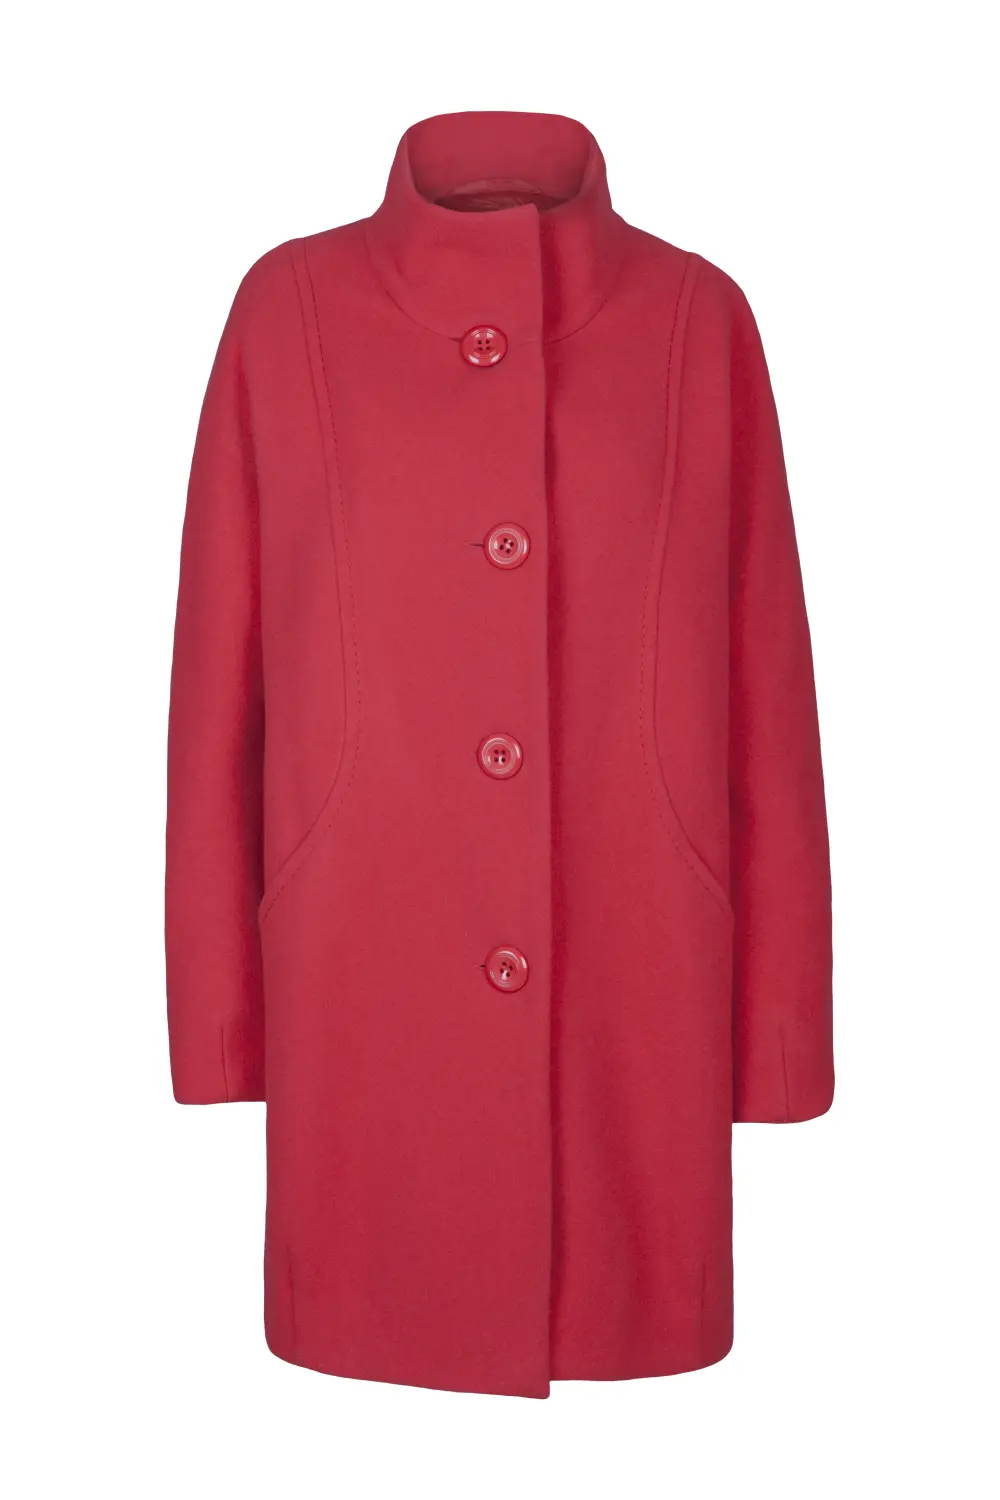 czerwona kurtka wełniana na guziki marki Vito Vergelis